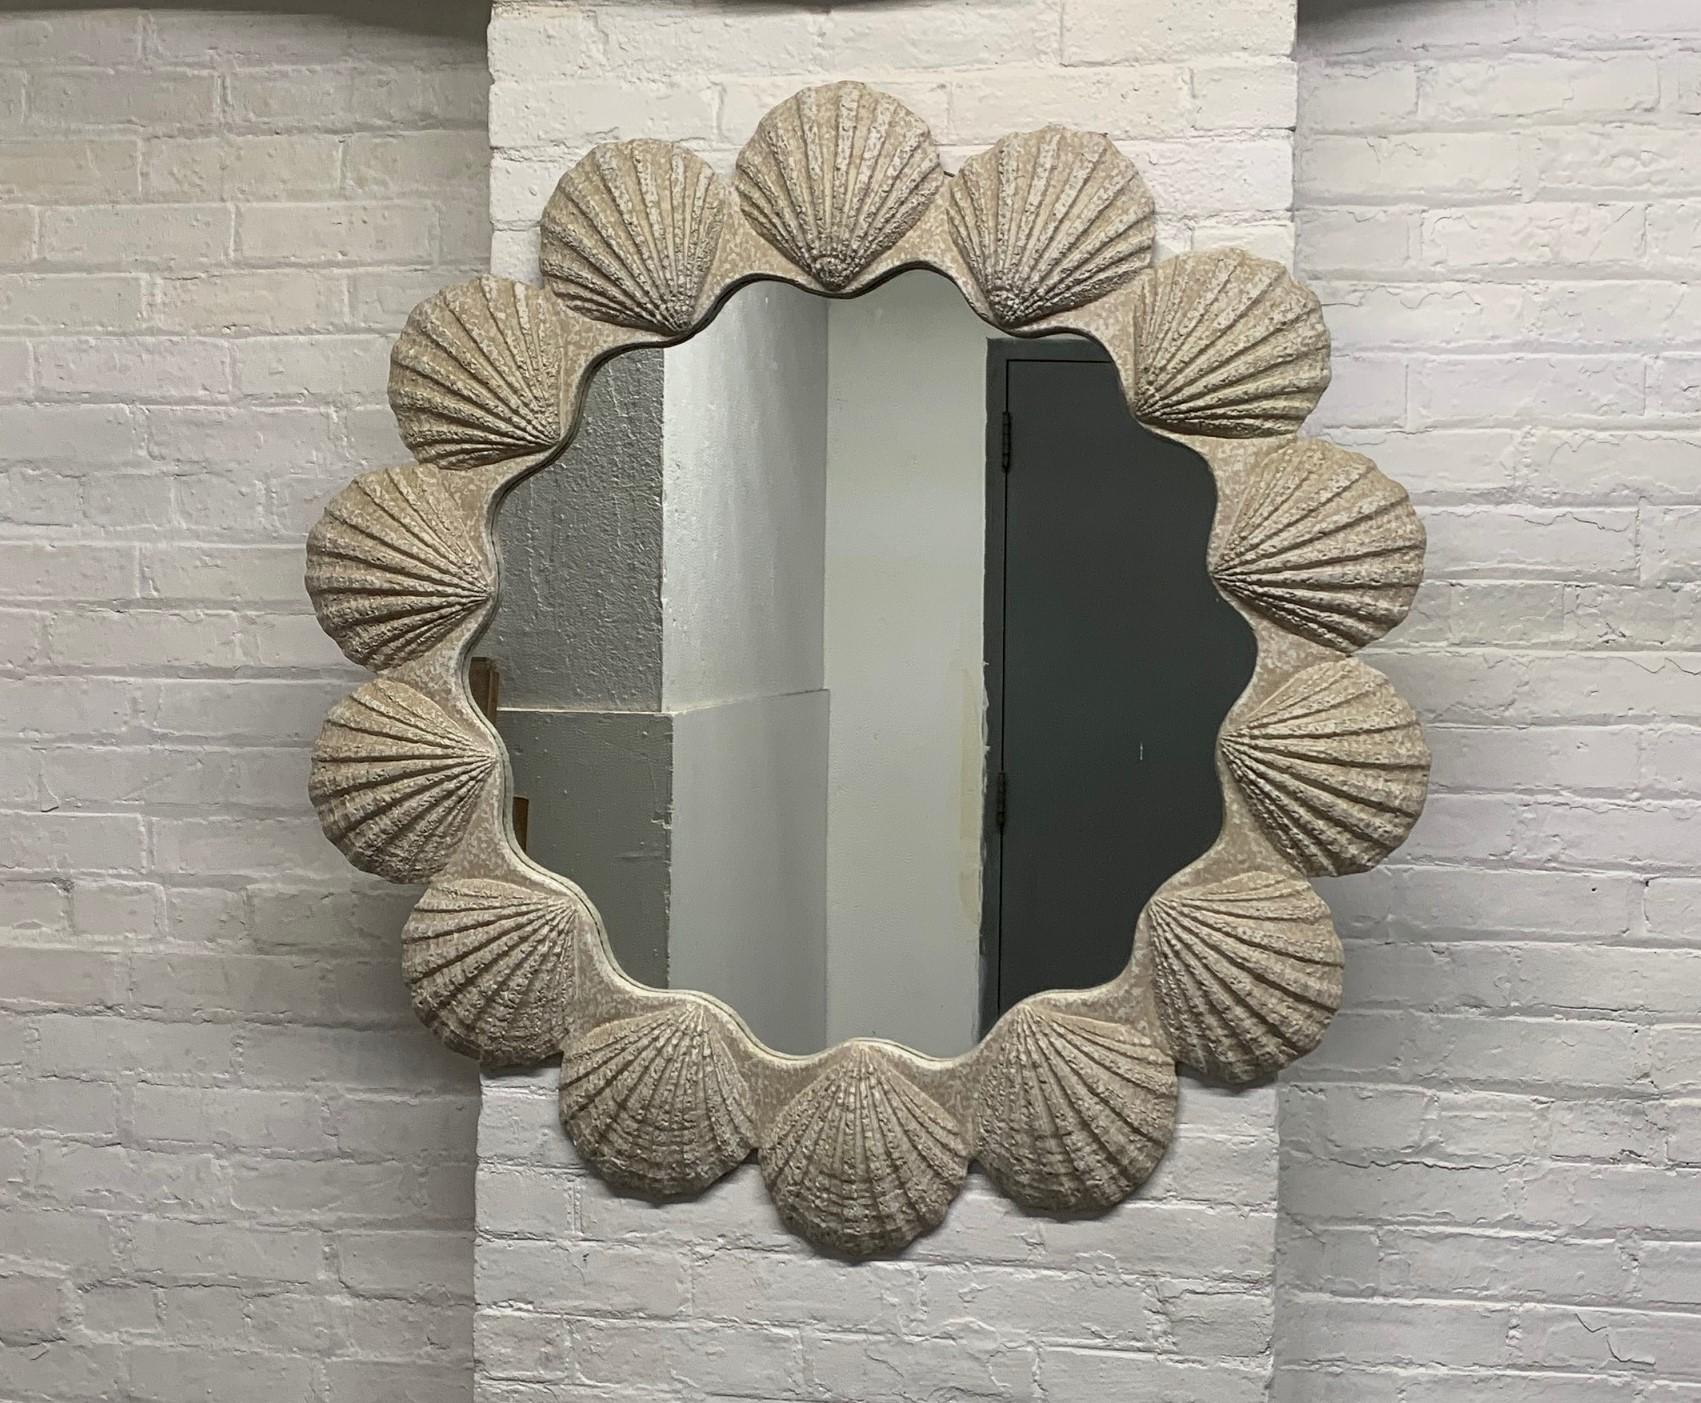 Großer Spiegel in Form einer Gipsmuschel. Der Spiegel hat einen dekorativen, strukturierten, muschelförmigen Rahmen und ist in sehr gutem Zustand.